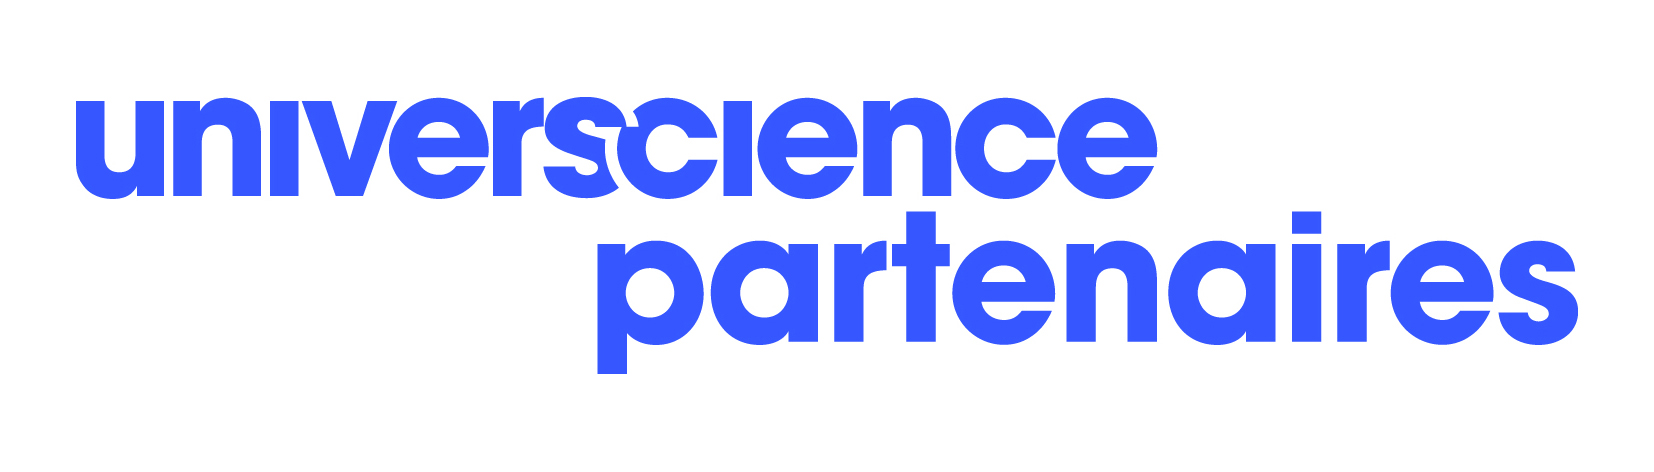 Logo Universcience partenaires